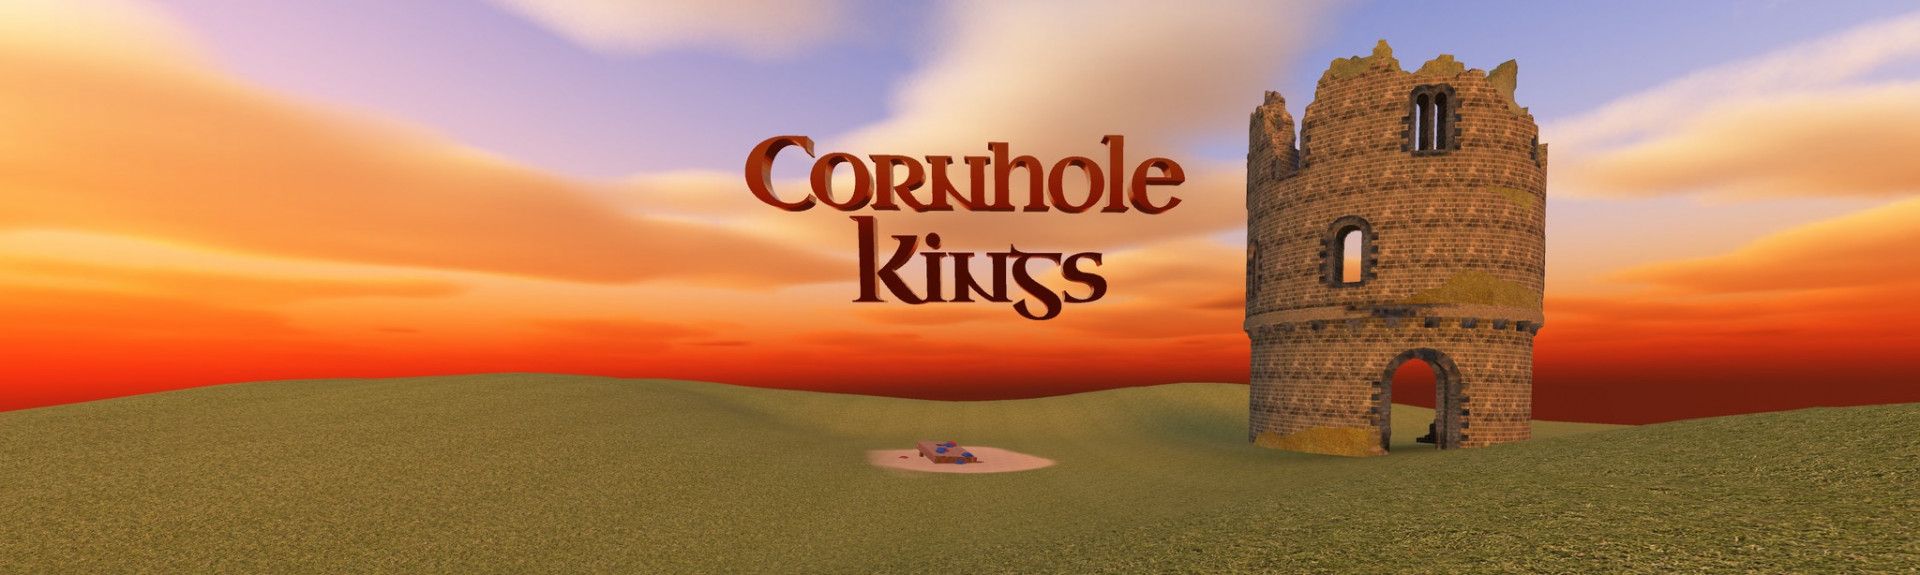 Cornhole Kings